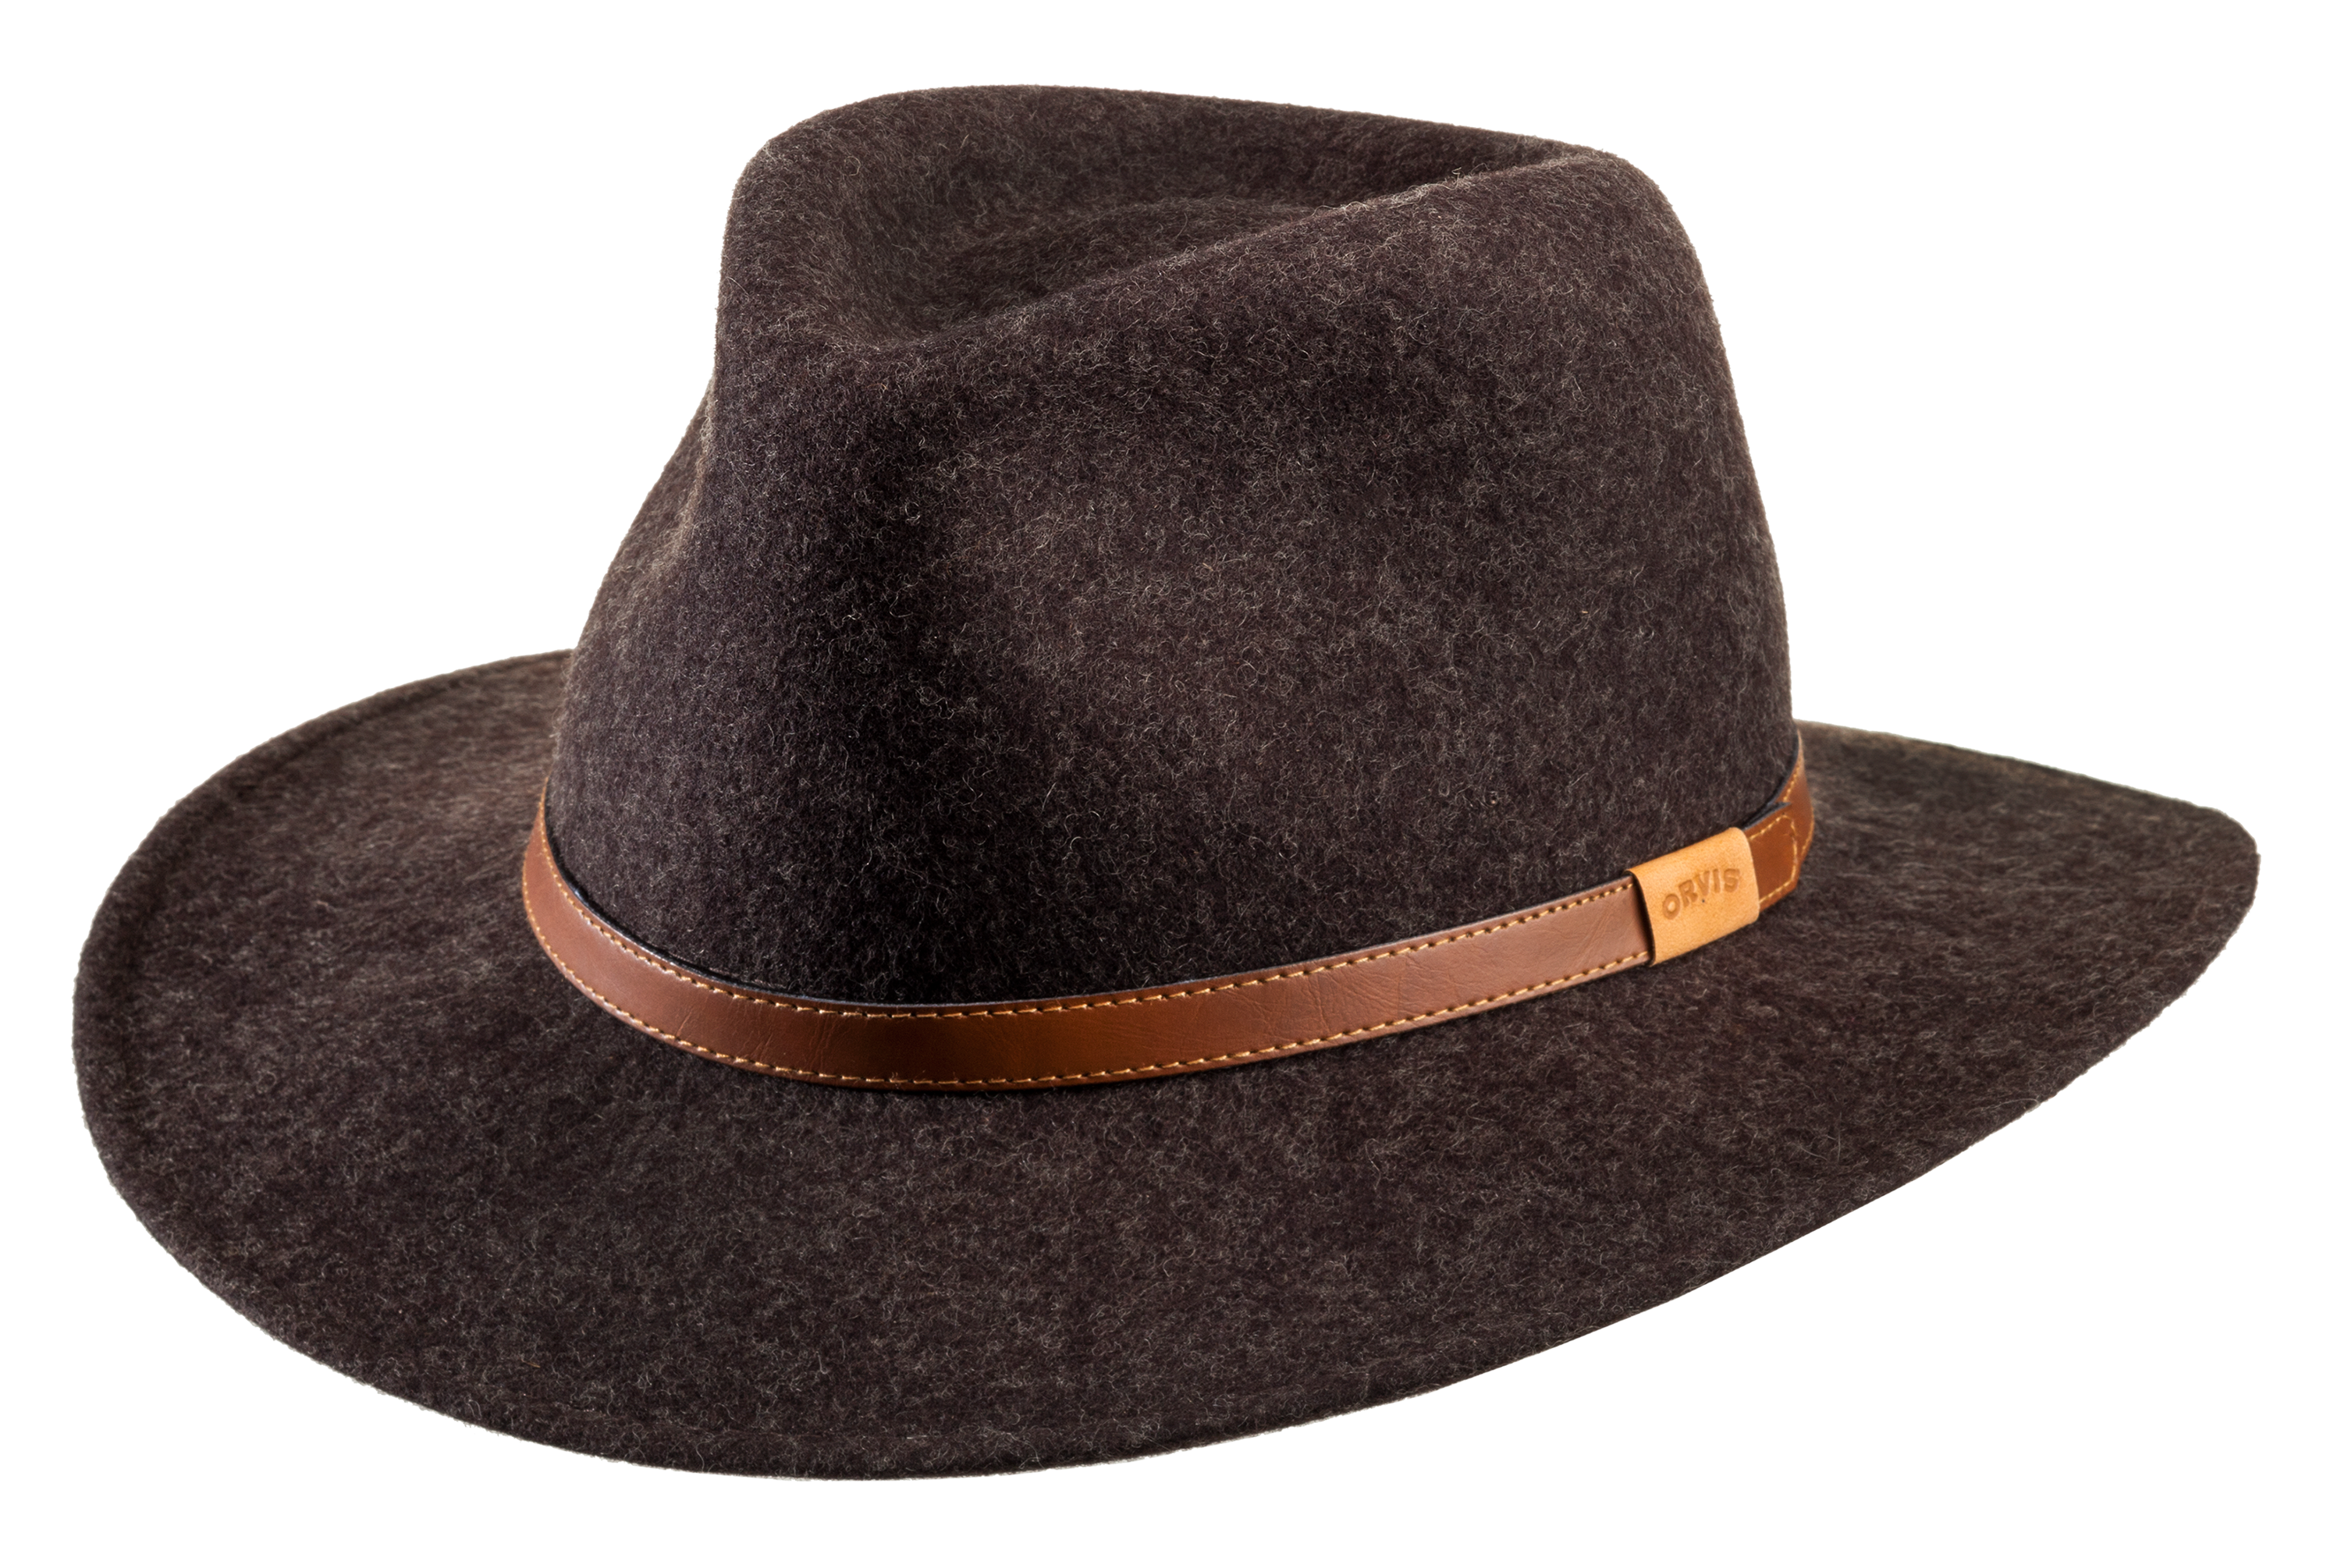 Orvis Cotton Hats for Men